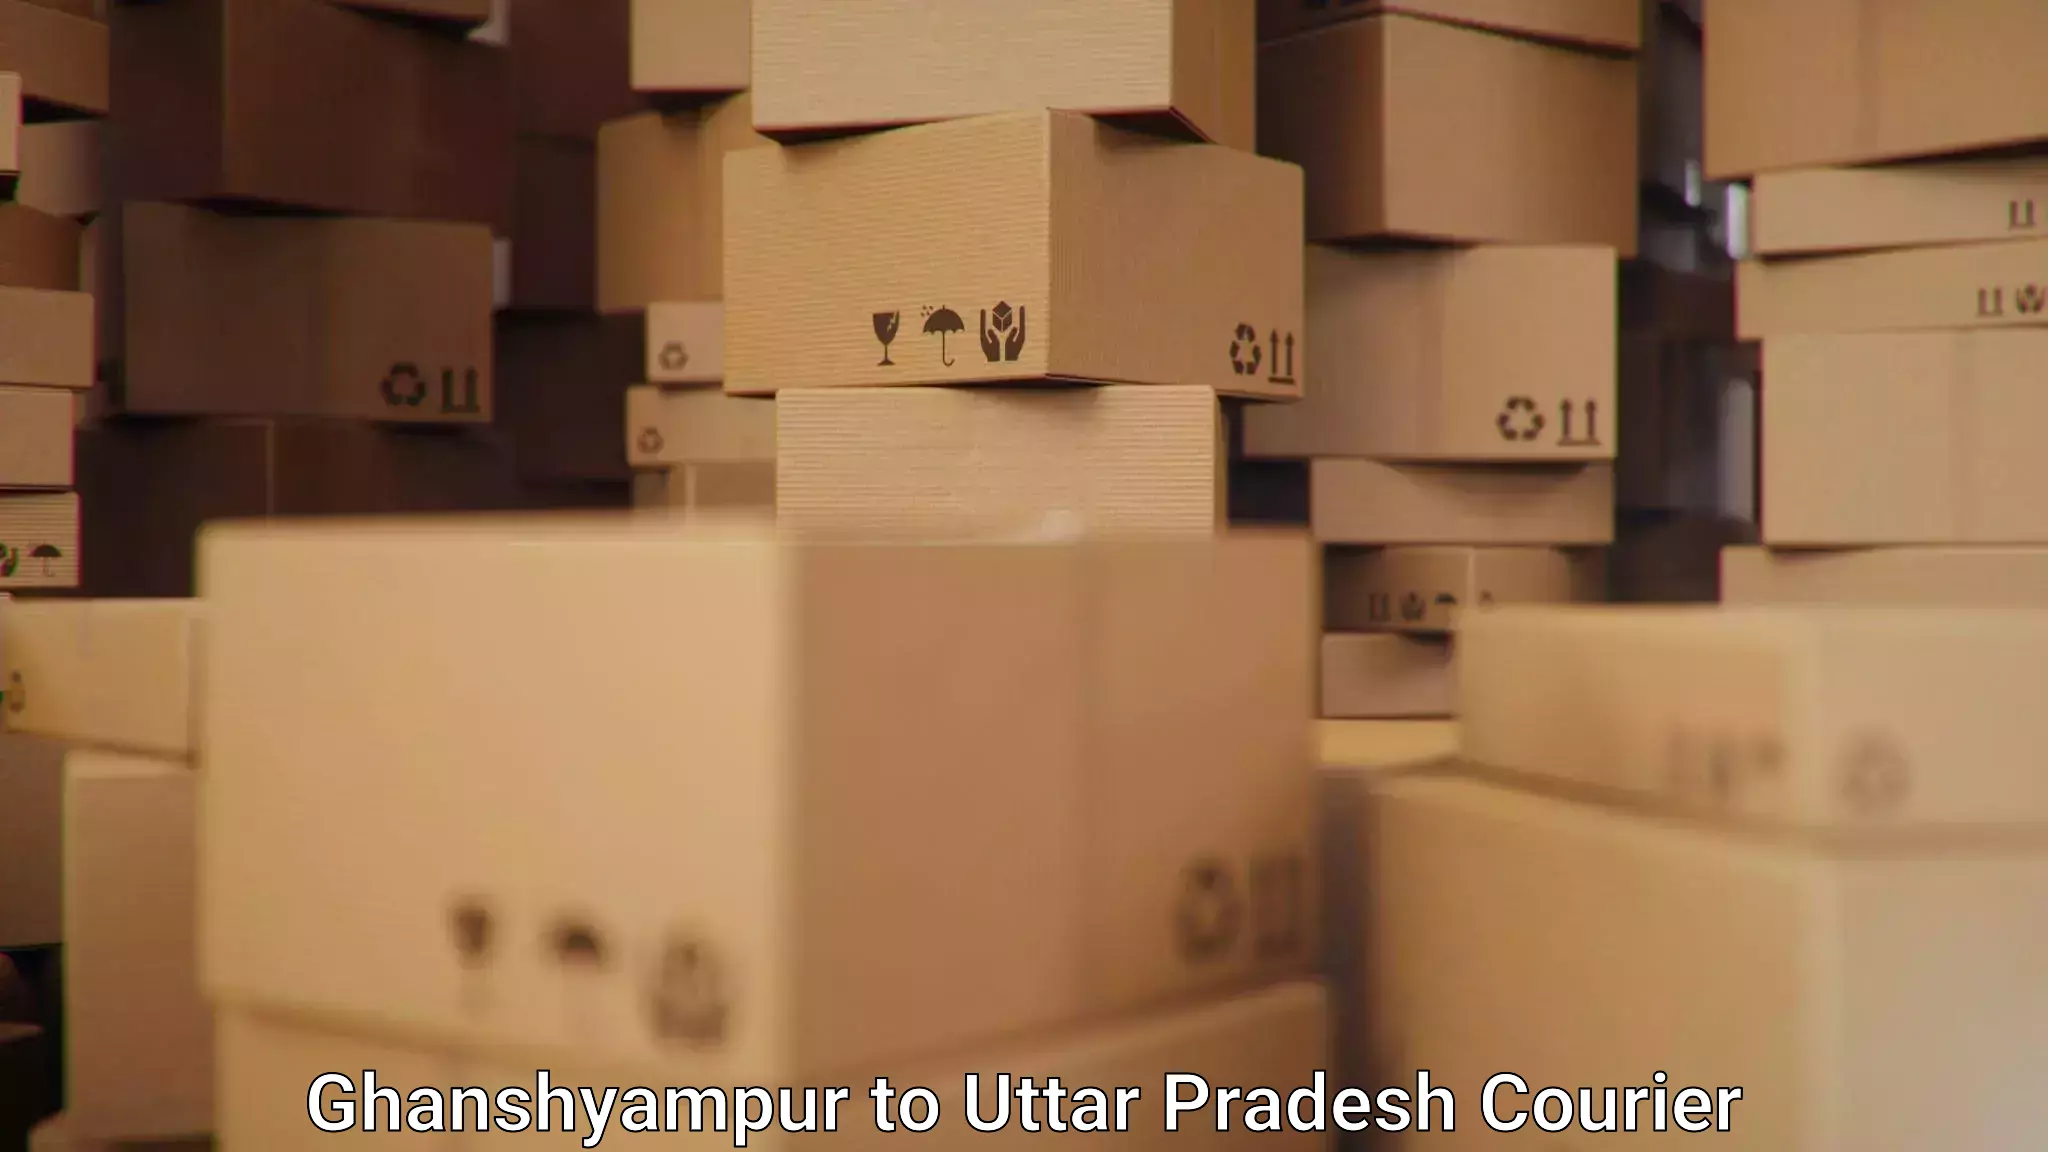 Efficient parcel transport Ghanshyampur to Uttar Pradesh